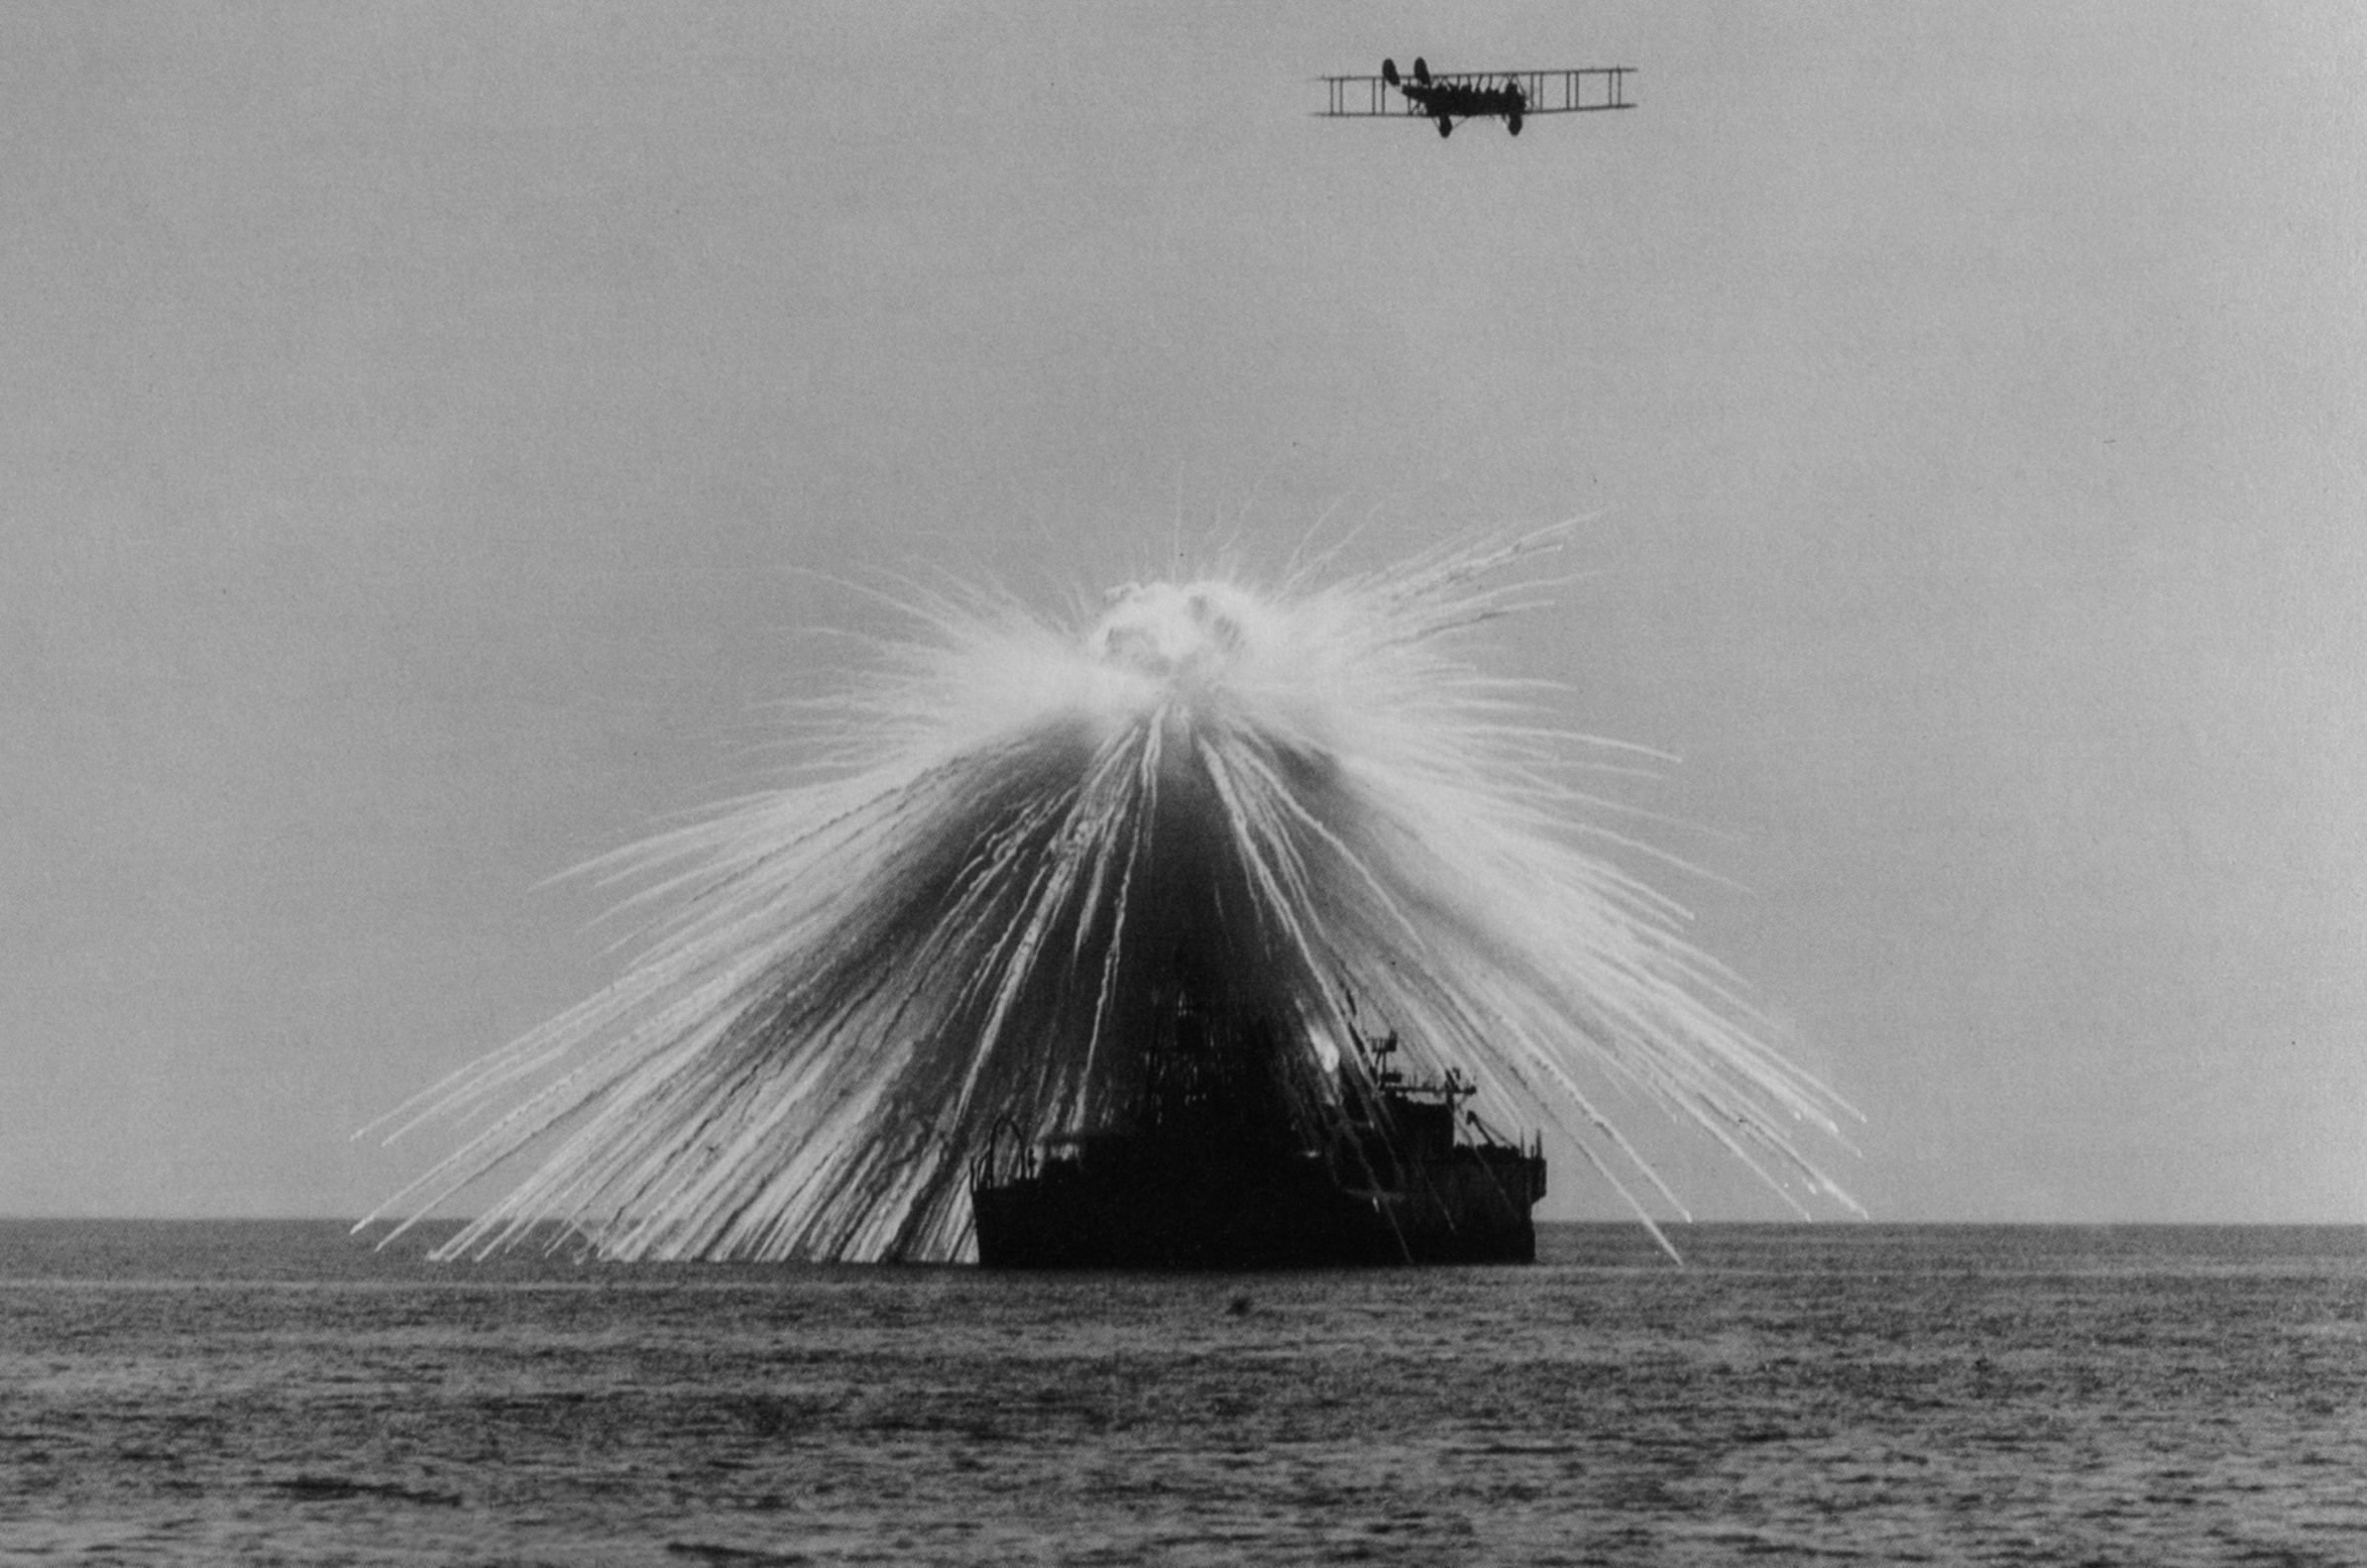 Bombing of the USS Alabama